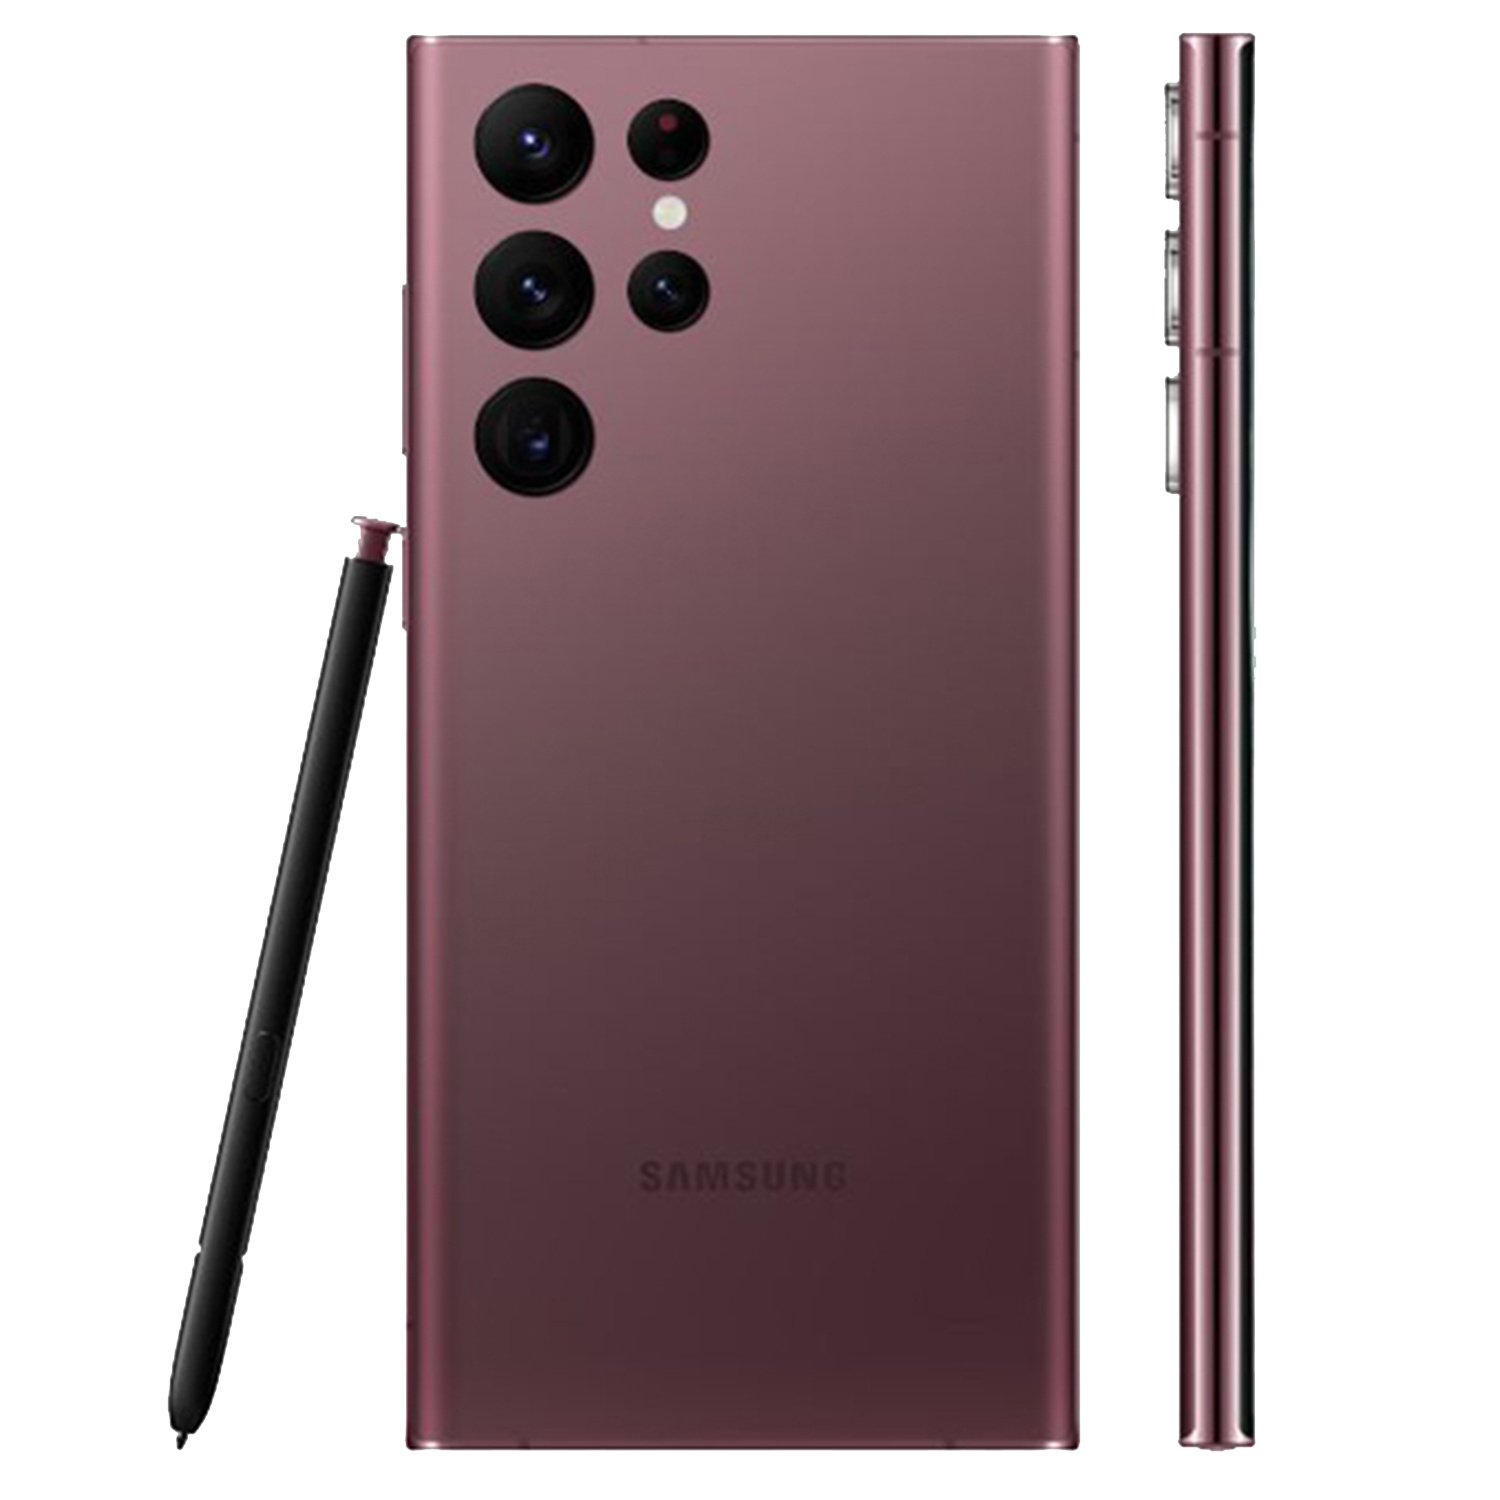 Điện thoại Samsung Galaxy S22 Ultra 5G chip Snapdragon 8 Gen 1, màn hình Dynamic AMOLED 2X 6.8 inch cùng pin 5000 mAh